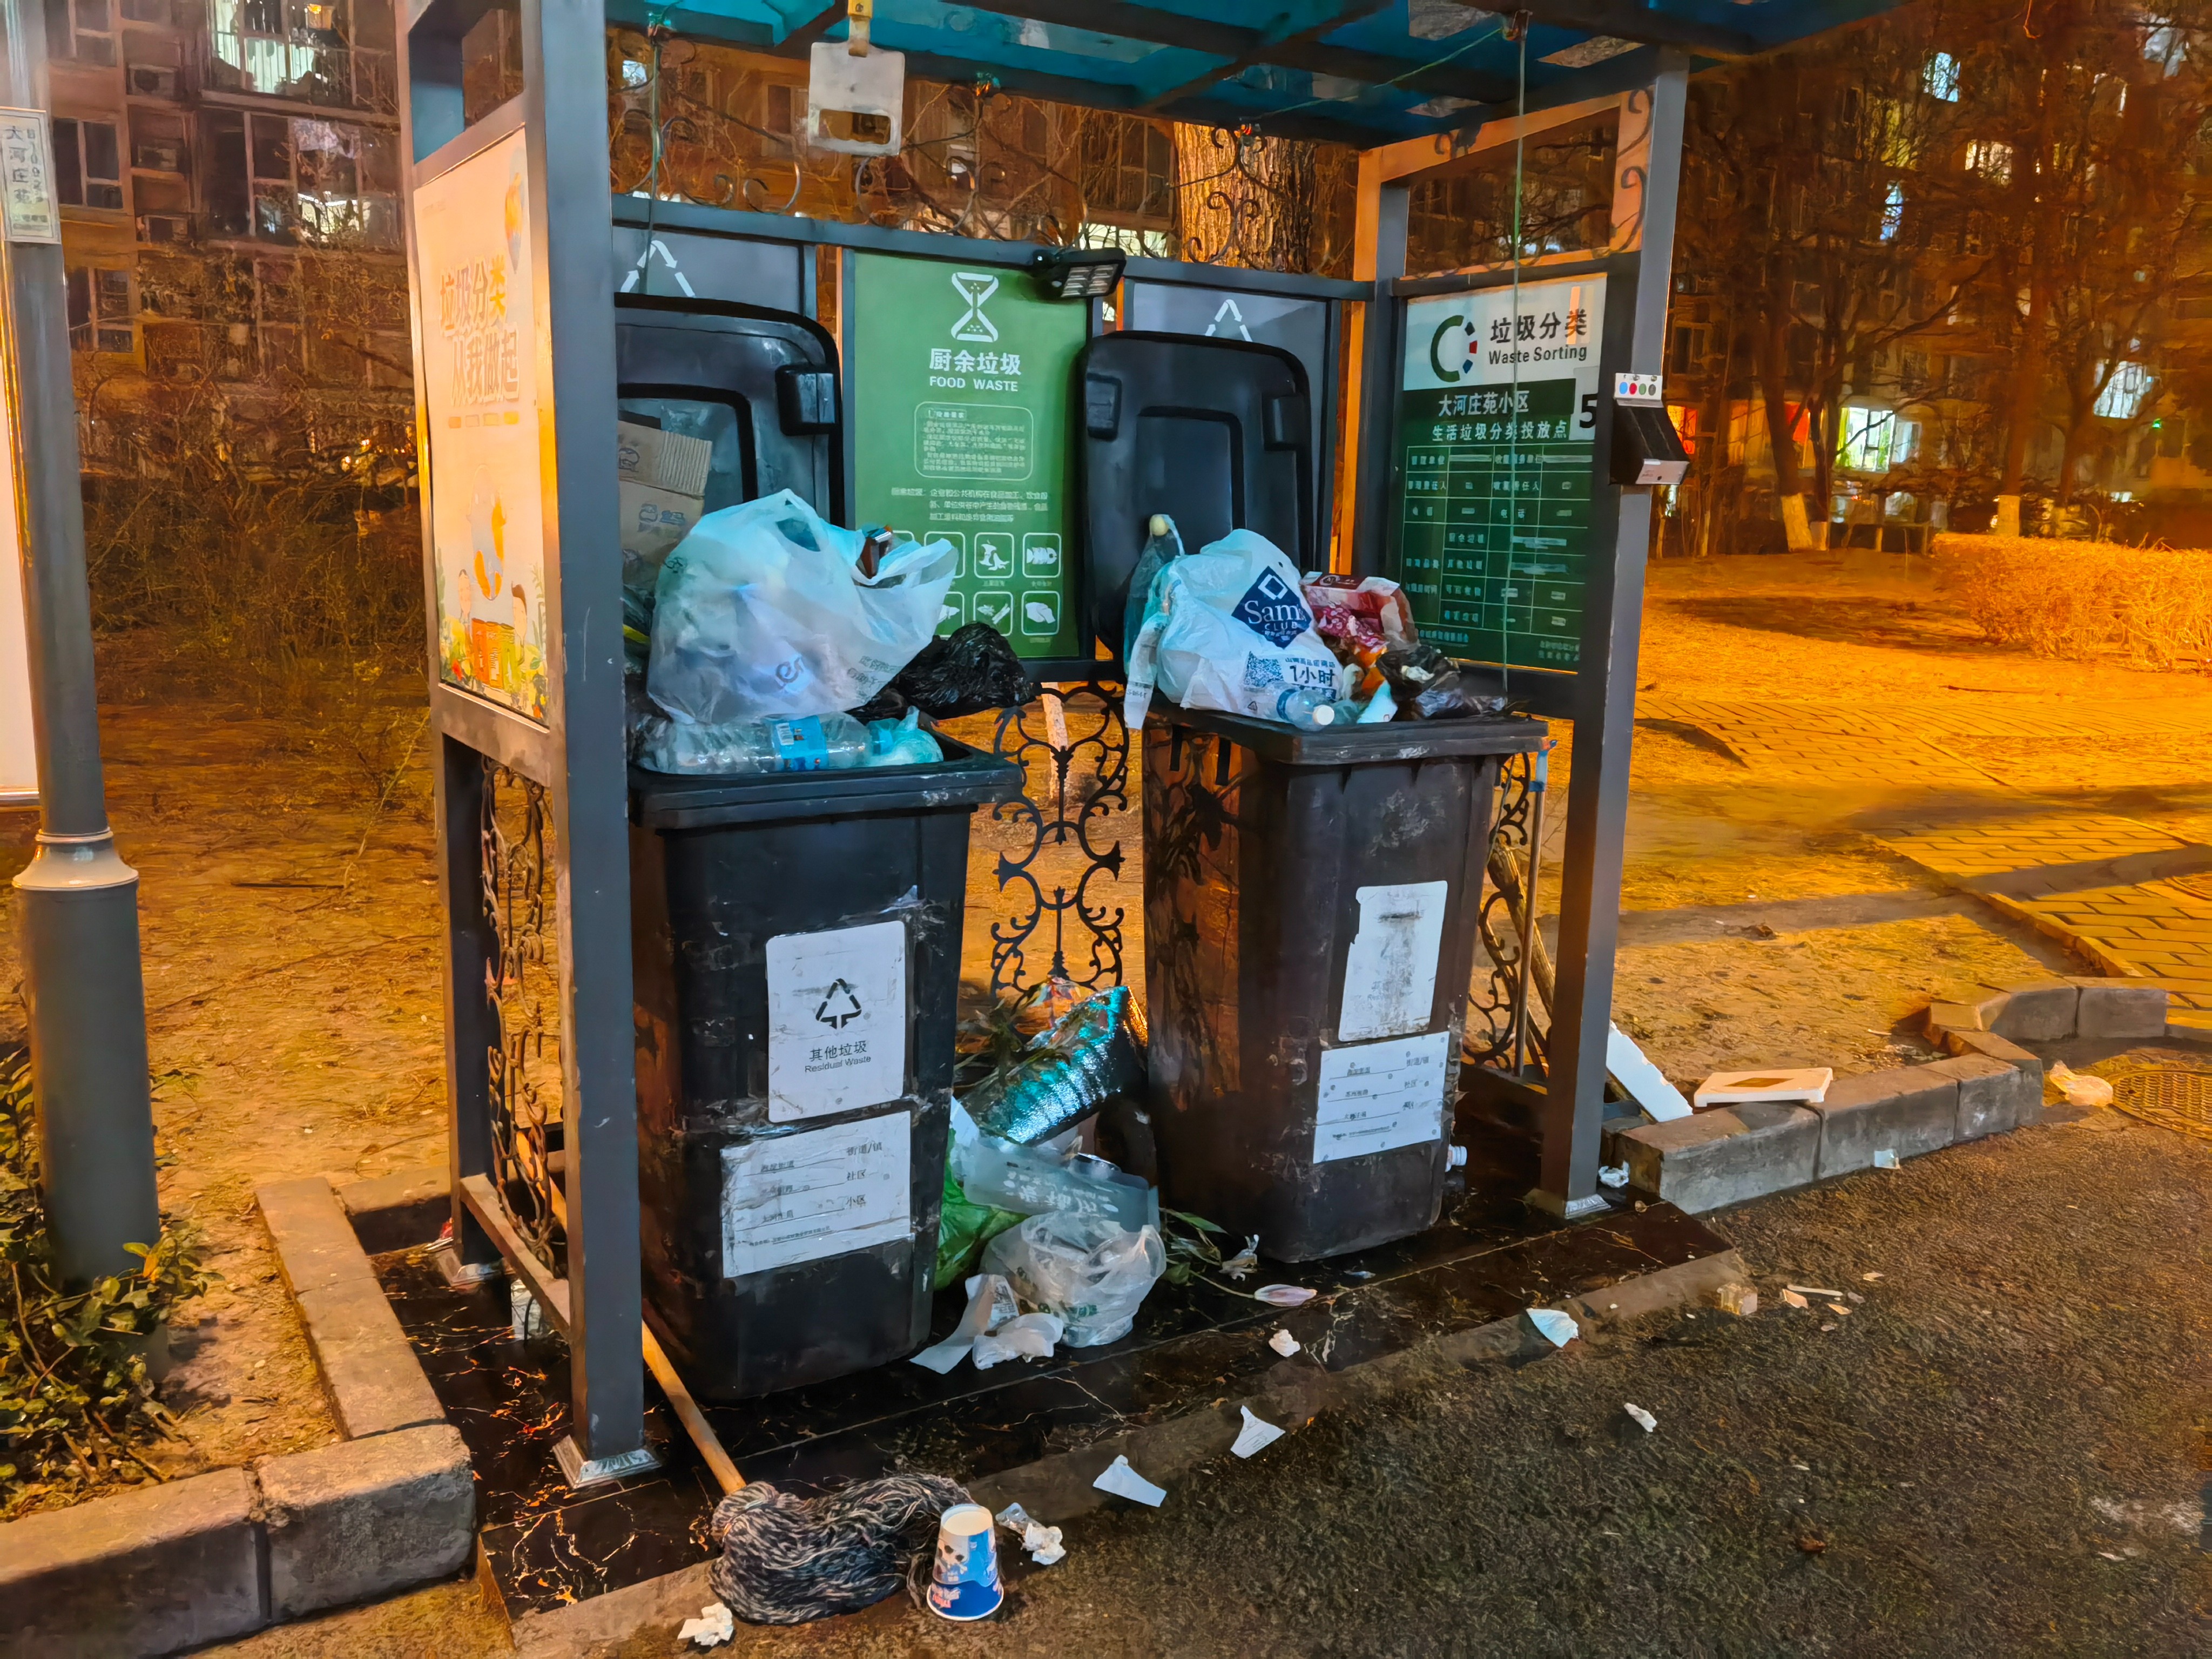 北京一小区晚间垃圾堆积如山 “晚高峰”能加几个垃圾桶吗？